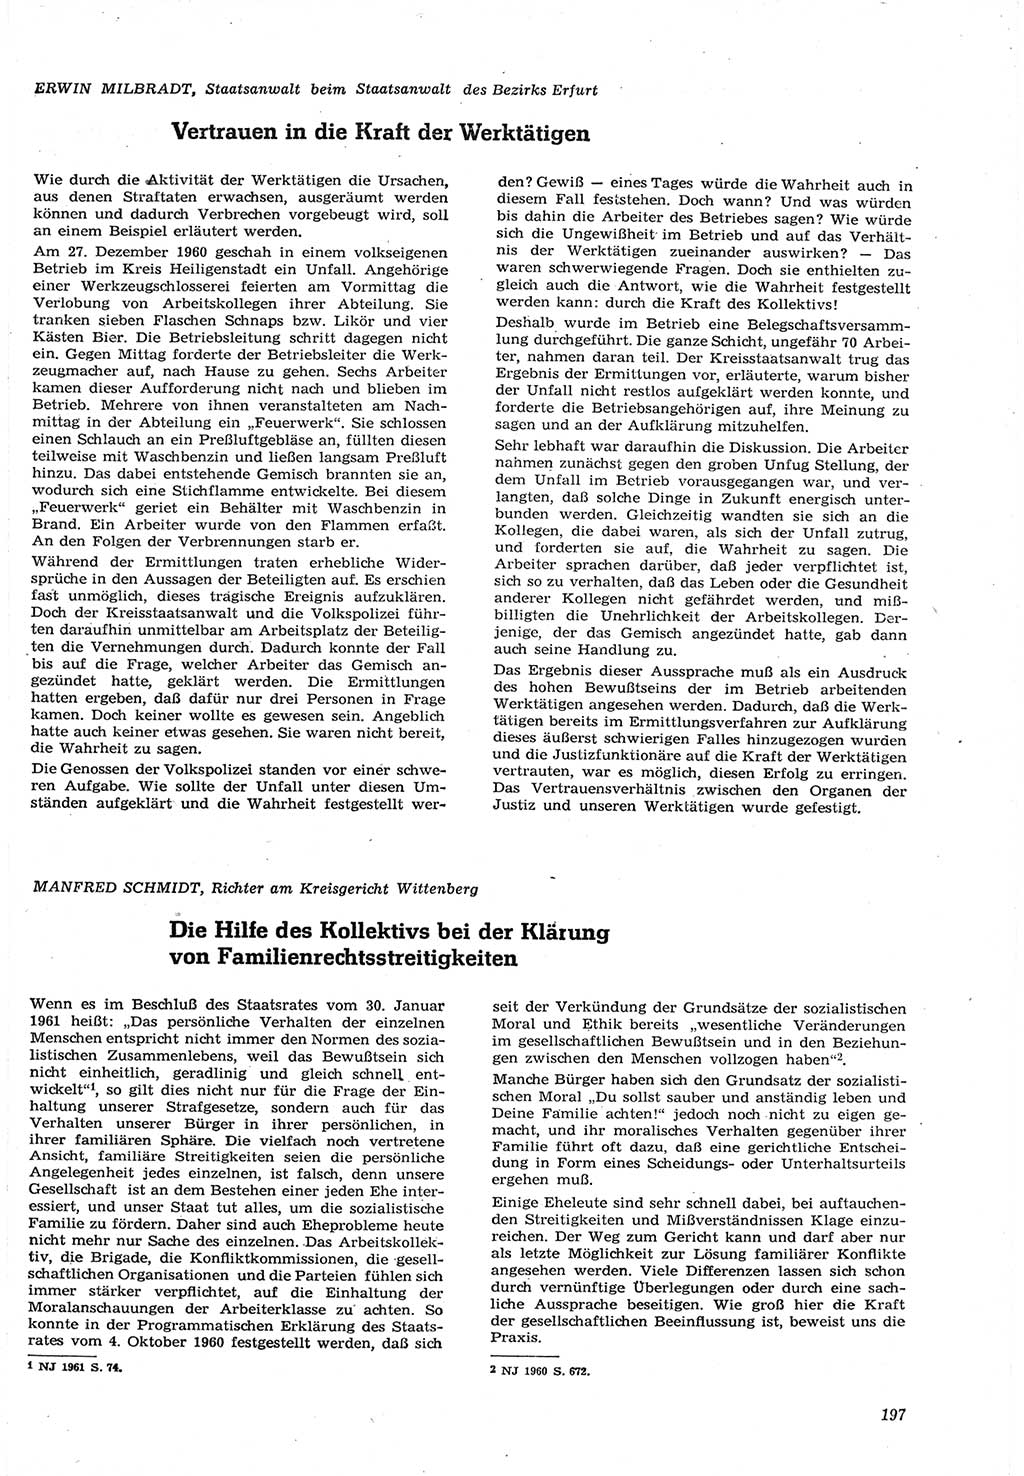 Neue Justiz (NJ), Zeitschrift für Recht und Rechtswissenschaft [Deutsche Demokratische Republik (DDR)], 15. Jahrgang 1961, Seite 197 (NJ DDR 1961, S. 197)